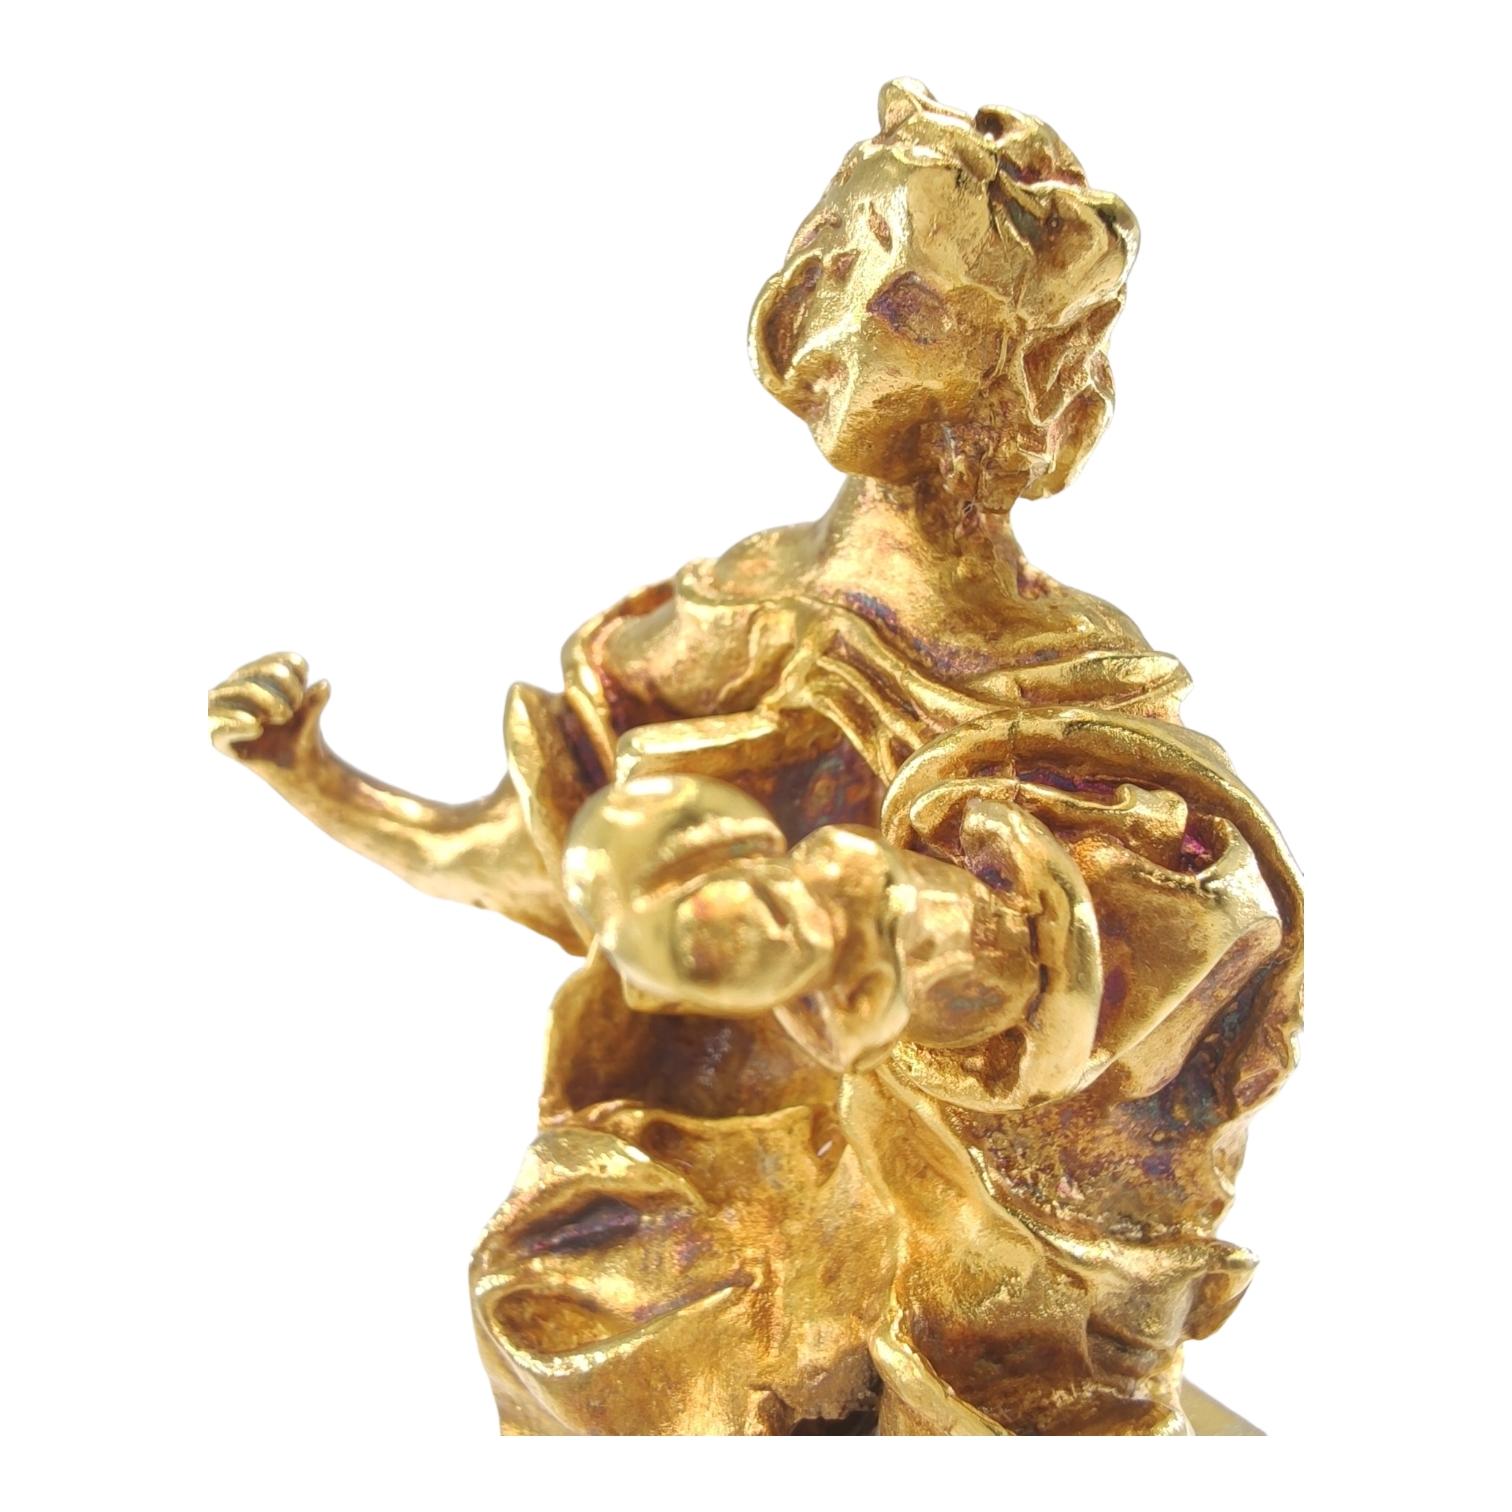  18K solid Gold Madonna of Port Lligat A Surreal Tribute by Salvador Dalí  For Sale 2